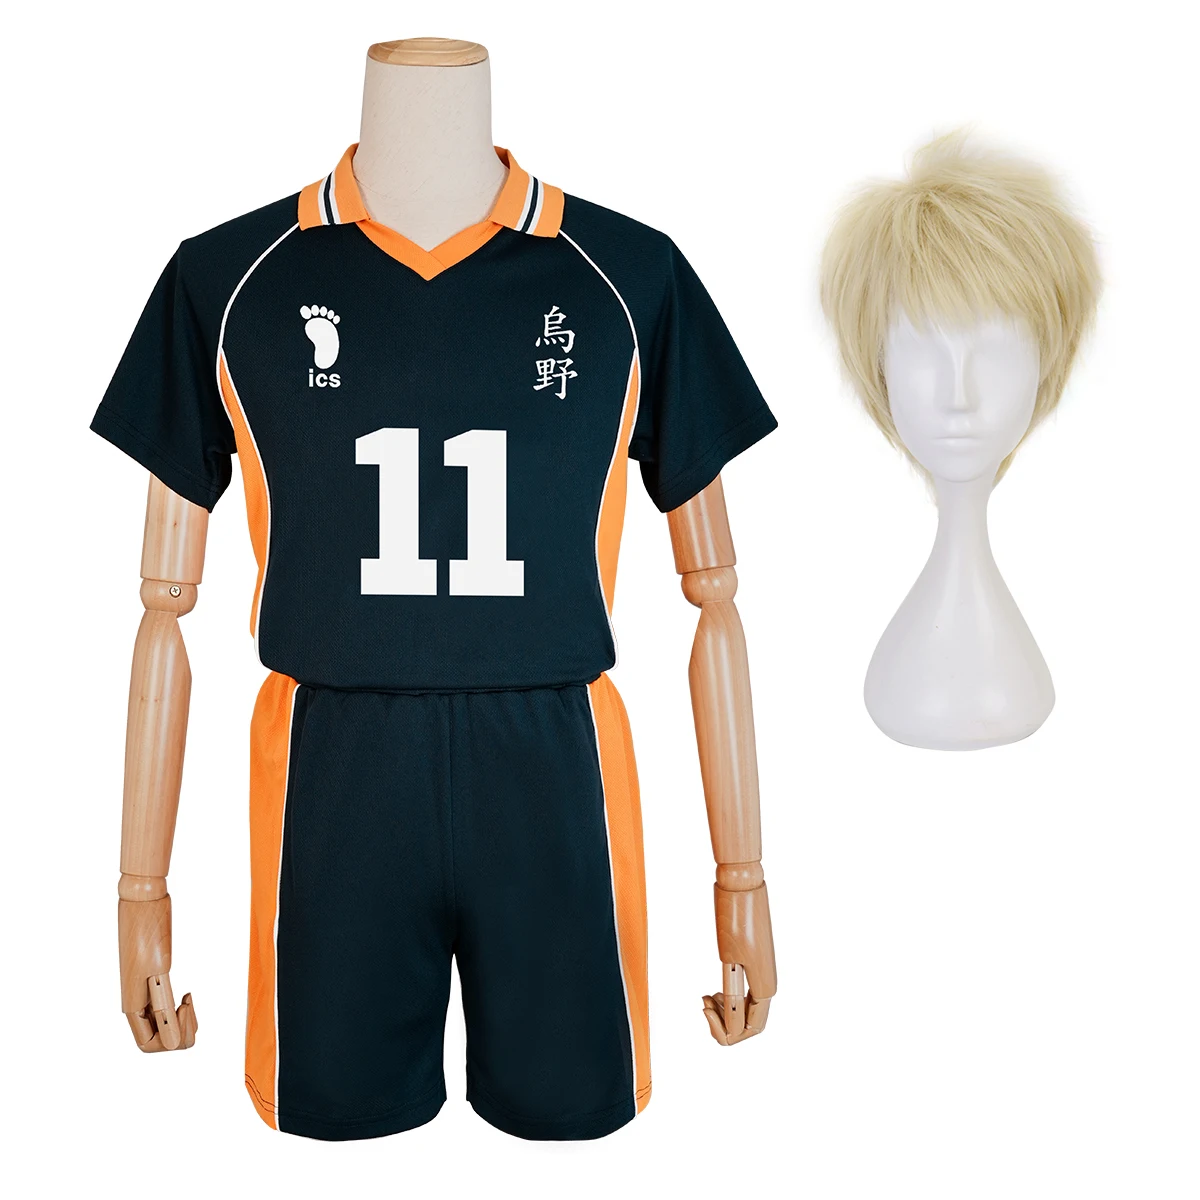 هولون-هيكي أنيمي تأثيري زي مع شعر مستعار ، قمصان تسوكيشيما كي ، المدرسة الثانوية ، زي الكرة الطائرة ، أعلى وشورت ، ملابس يومية ، رقم 11